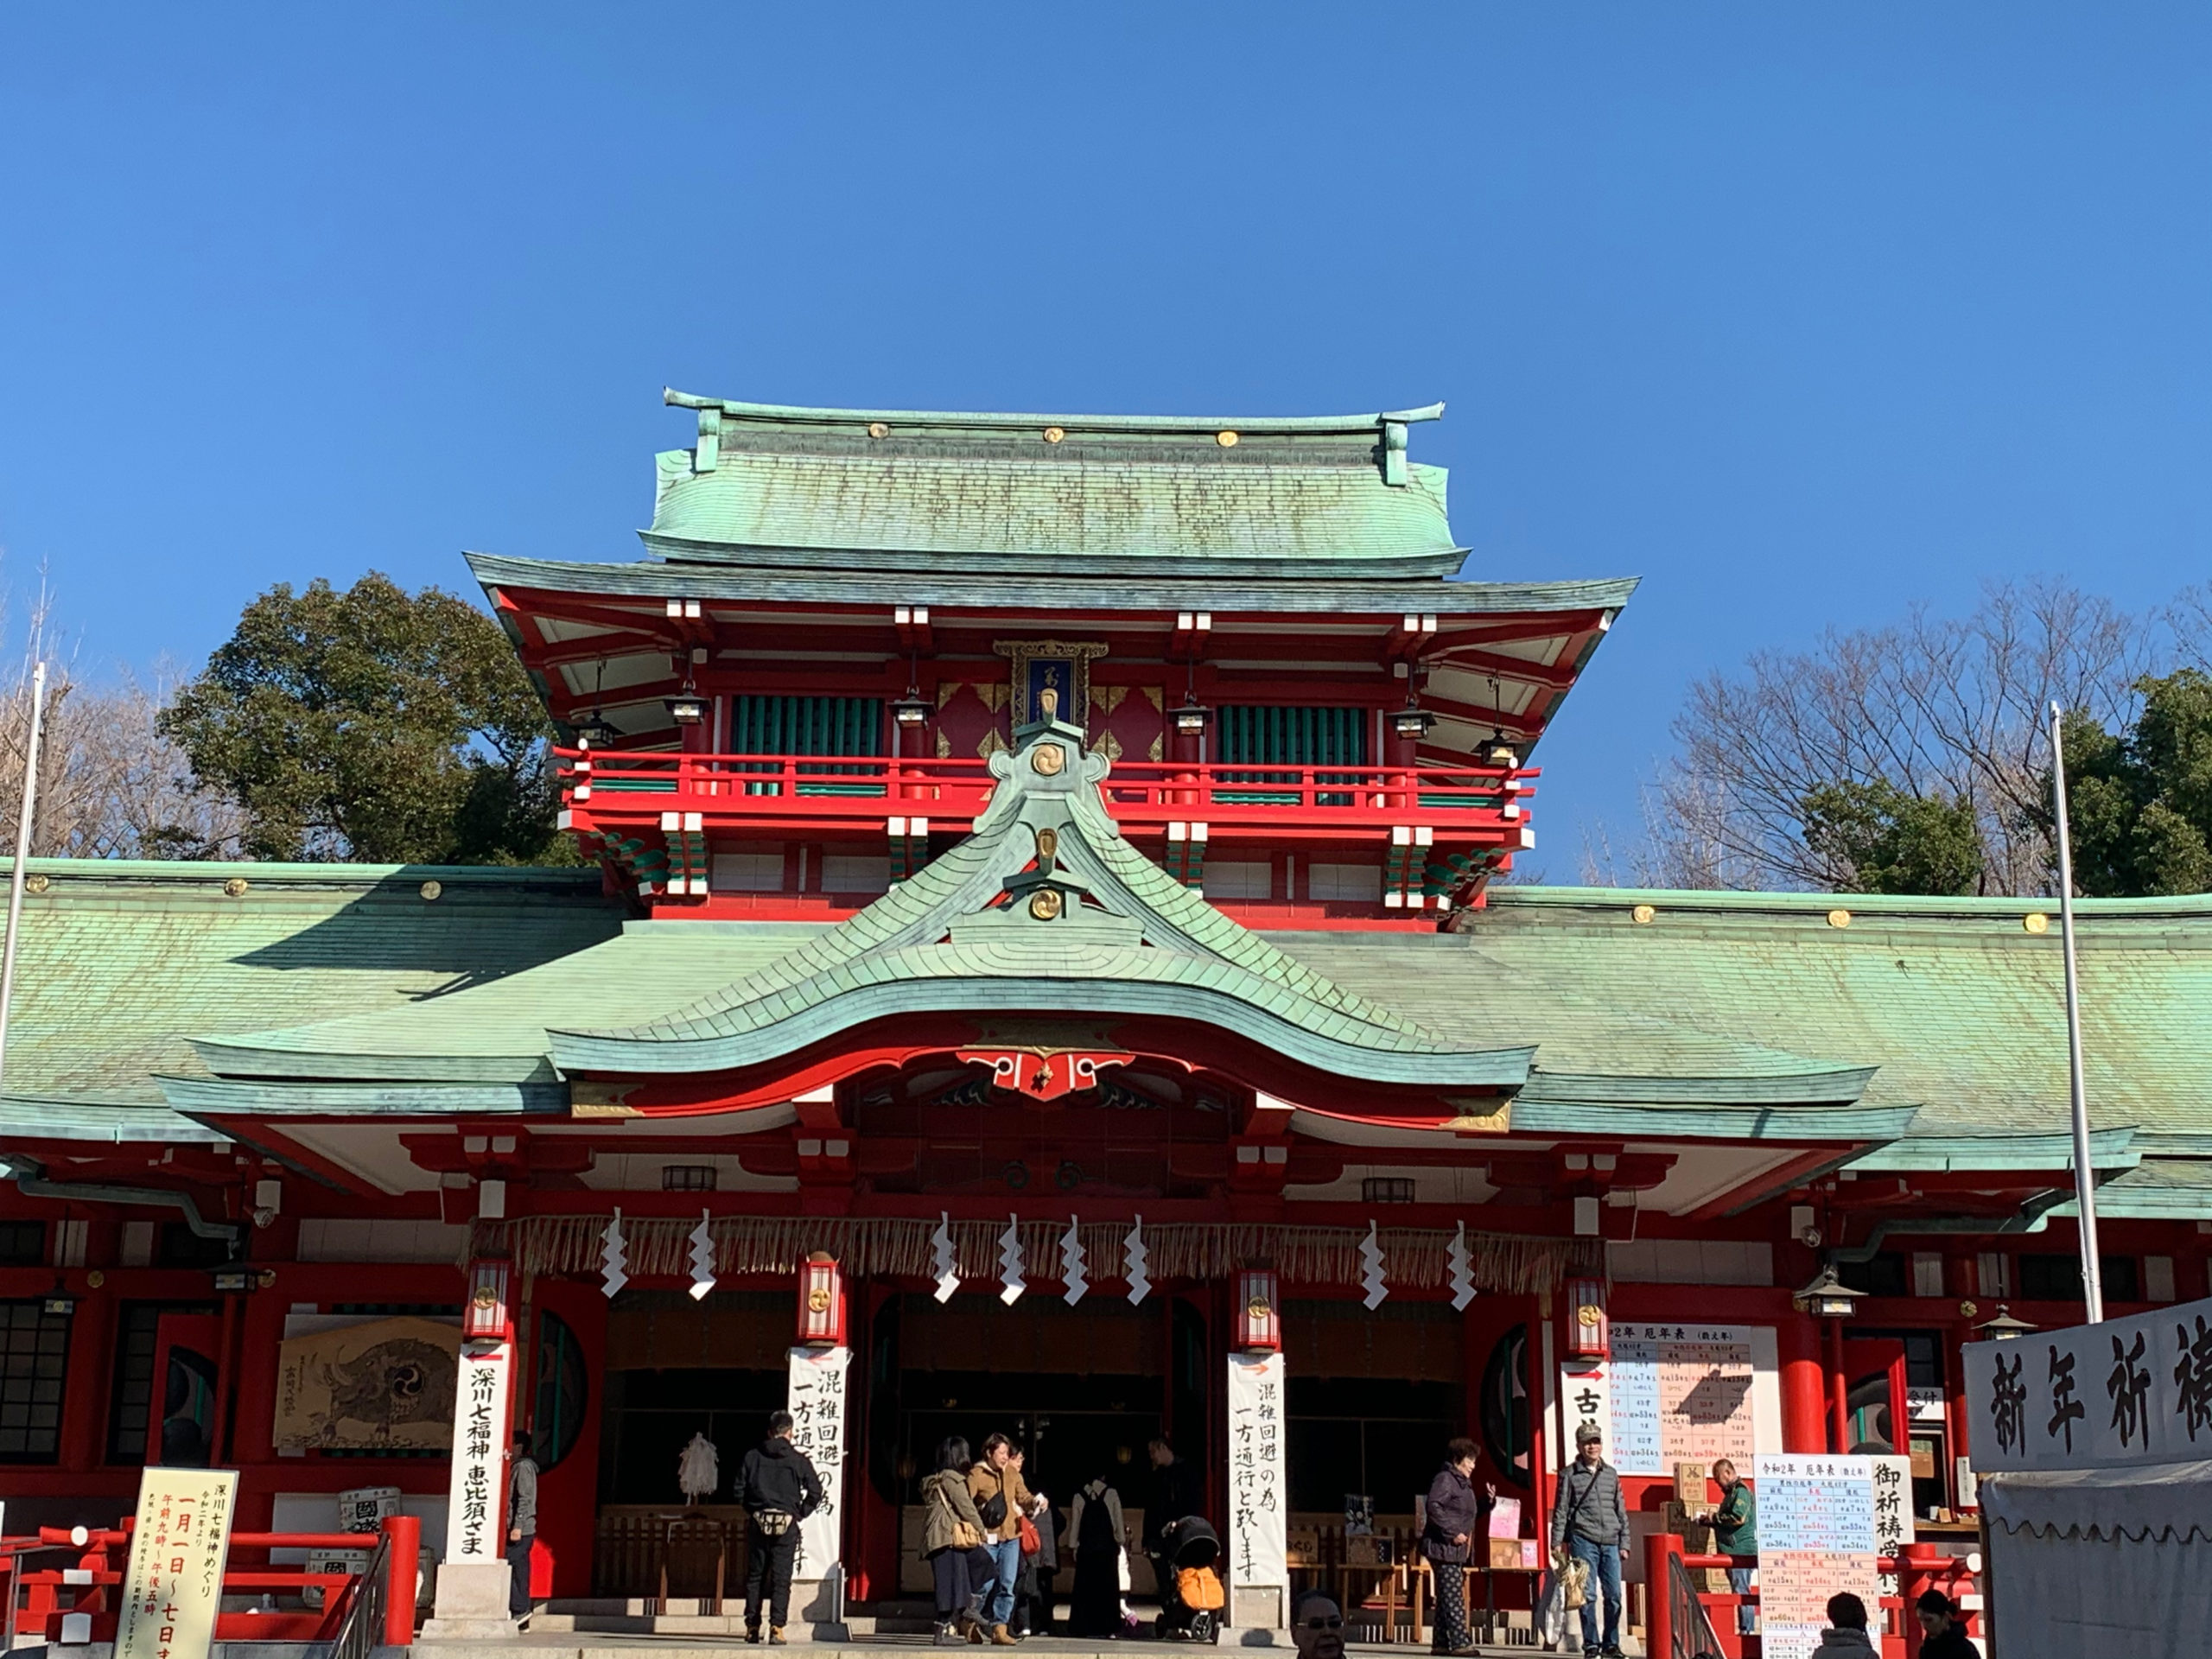 富岡八幡宮の元旦参詣を済ませると、新年の始まりを実感します